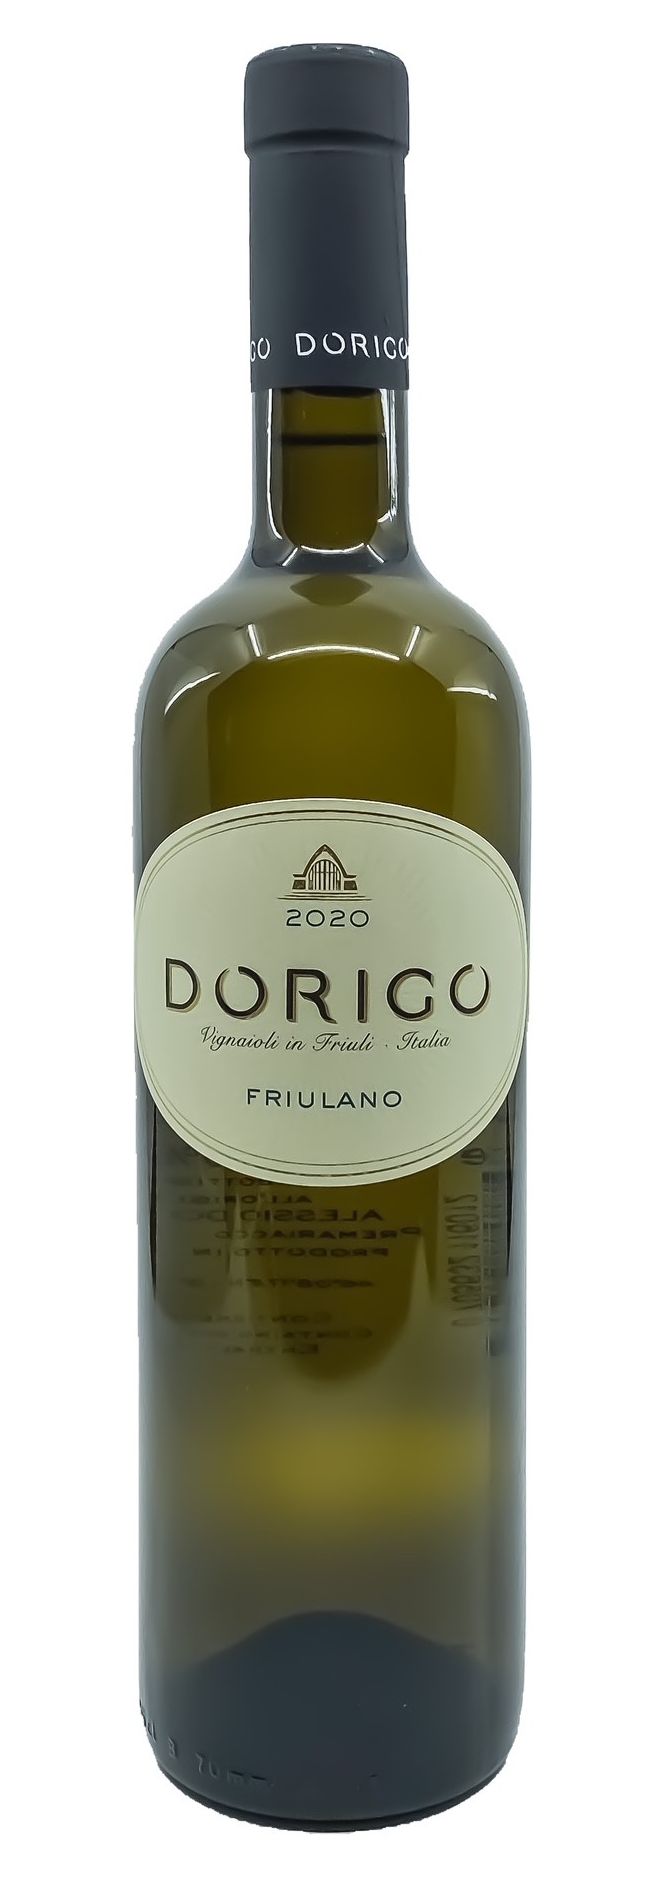 2021 Friulano Dorigo